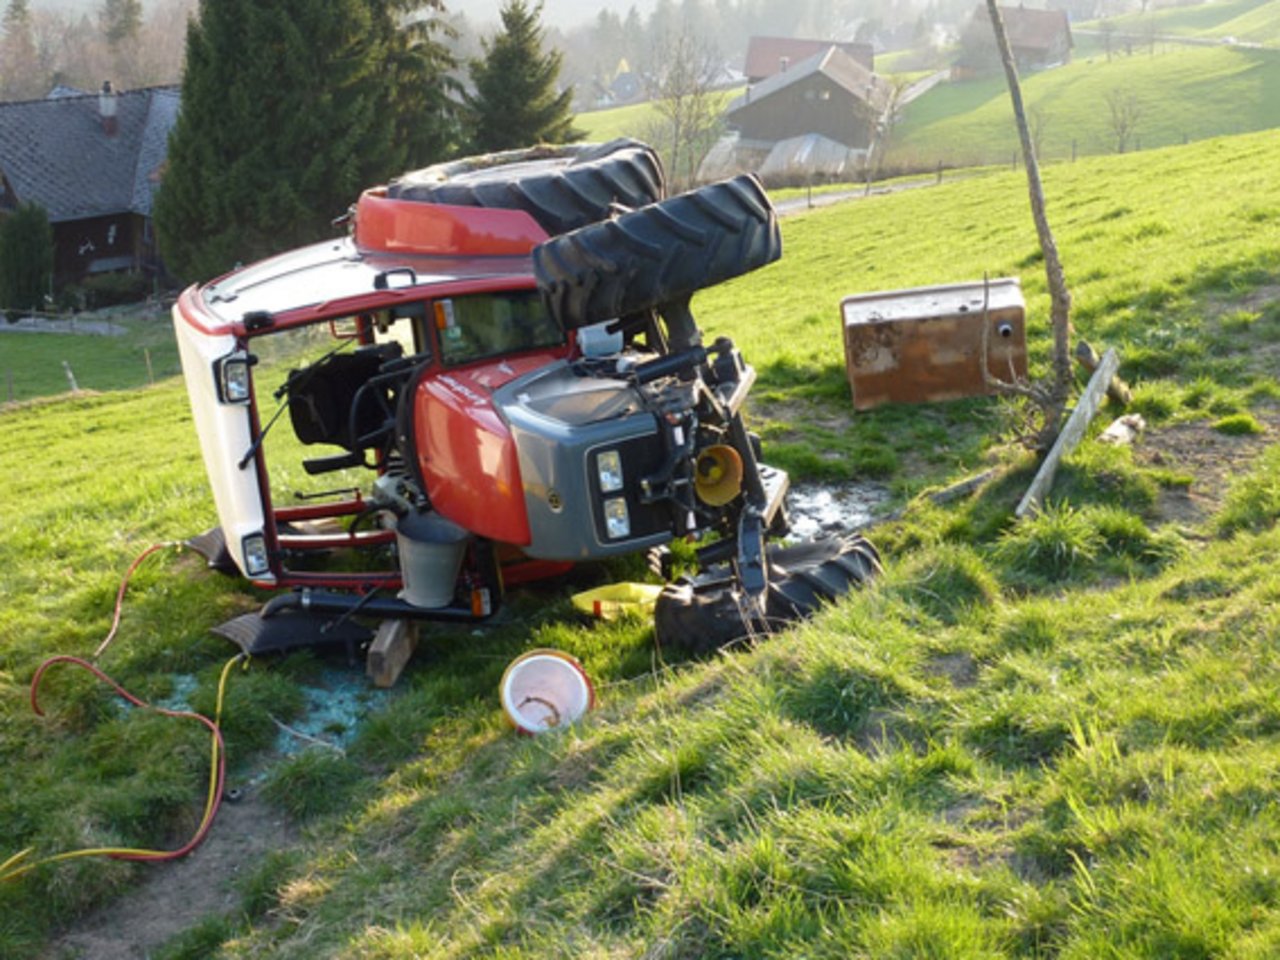 Im 2018 gab es in der Landwirtschaft 19 tödliche Arbeitsunfälle mehr als im Vorjahr. (Kantonspolizei St. Gallen)